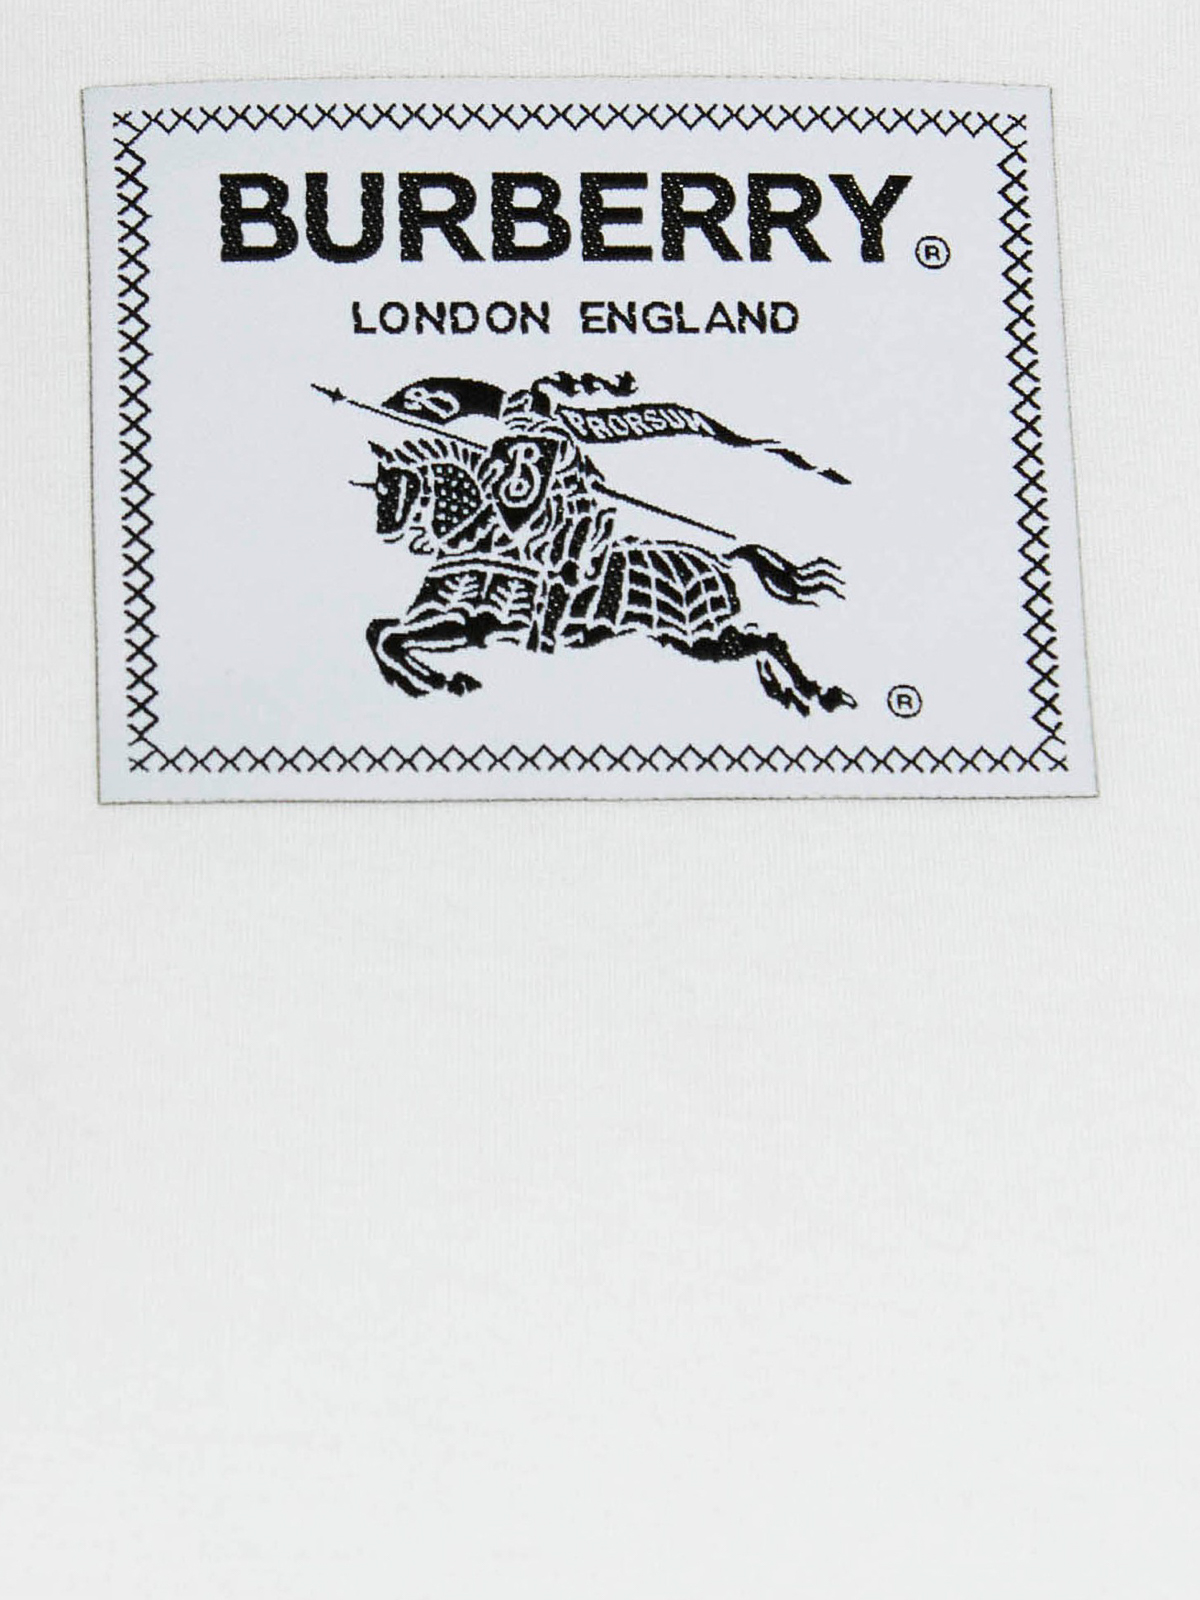 Shop Burberry Camiseta - Prorsum In White